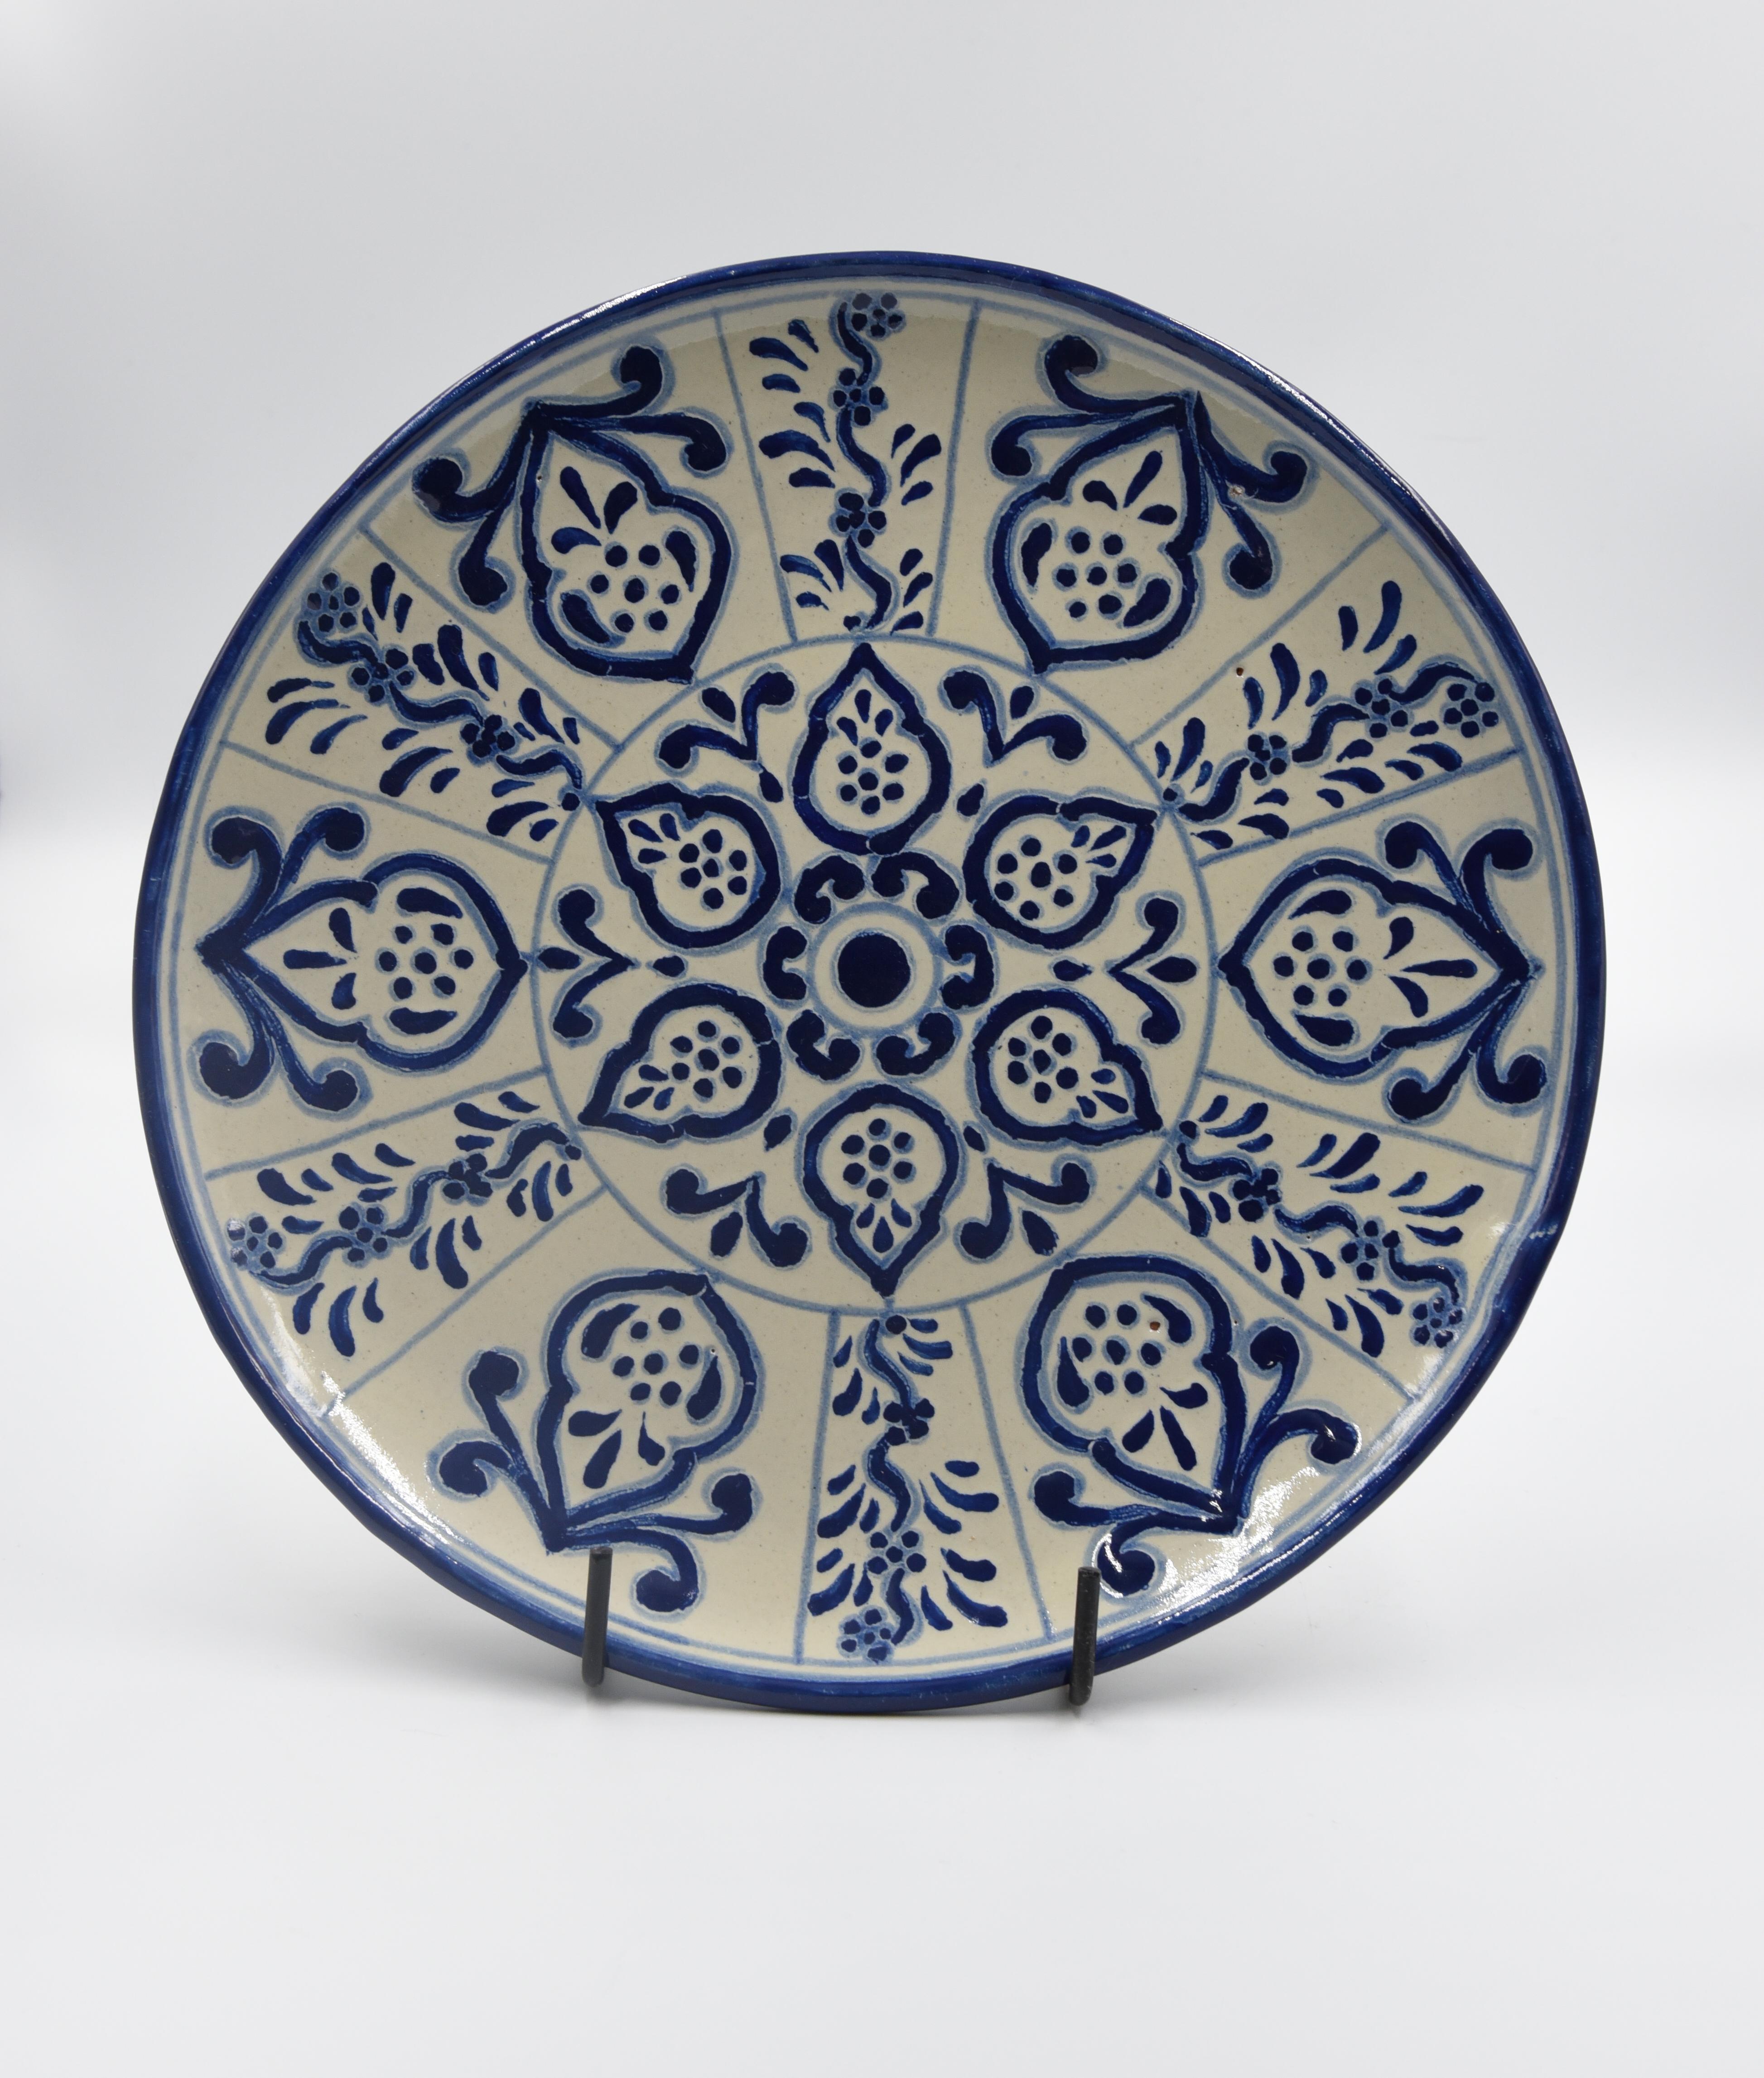 Authentische Talavera dekorative Platte Volkskunst Gericht mexikanischen Keramik blau weiß (Spanisch Kolonial)